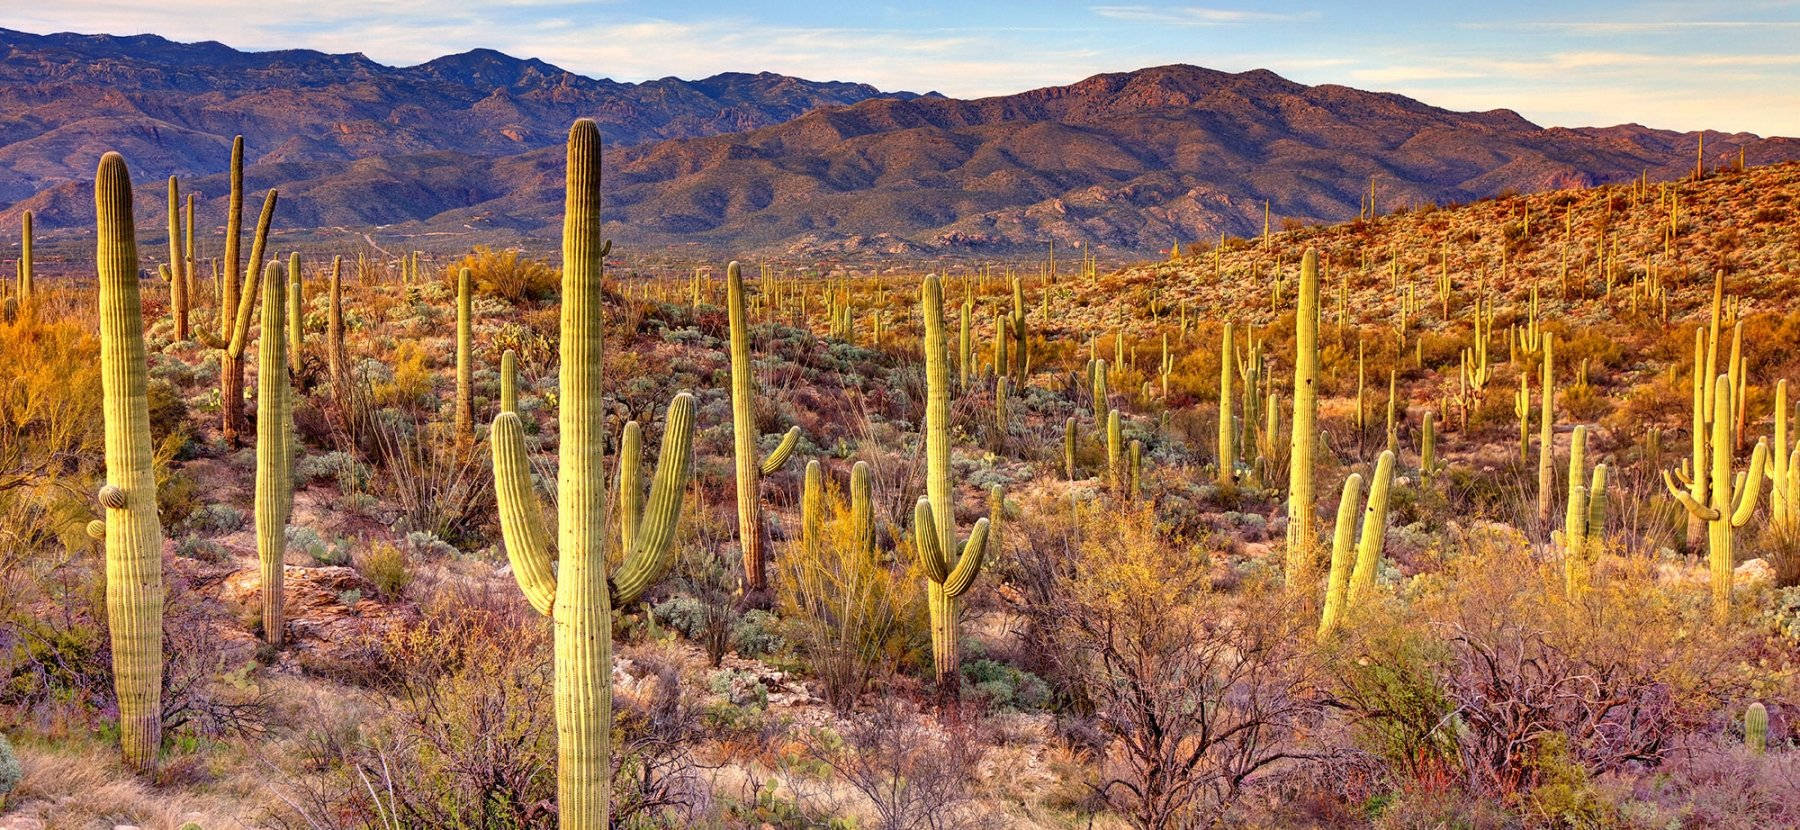 Arizona Desert Cactus Garden